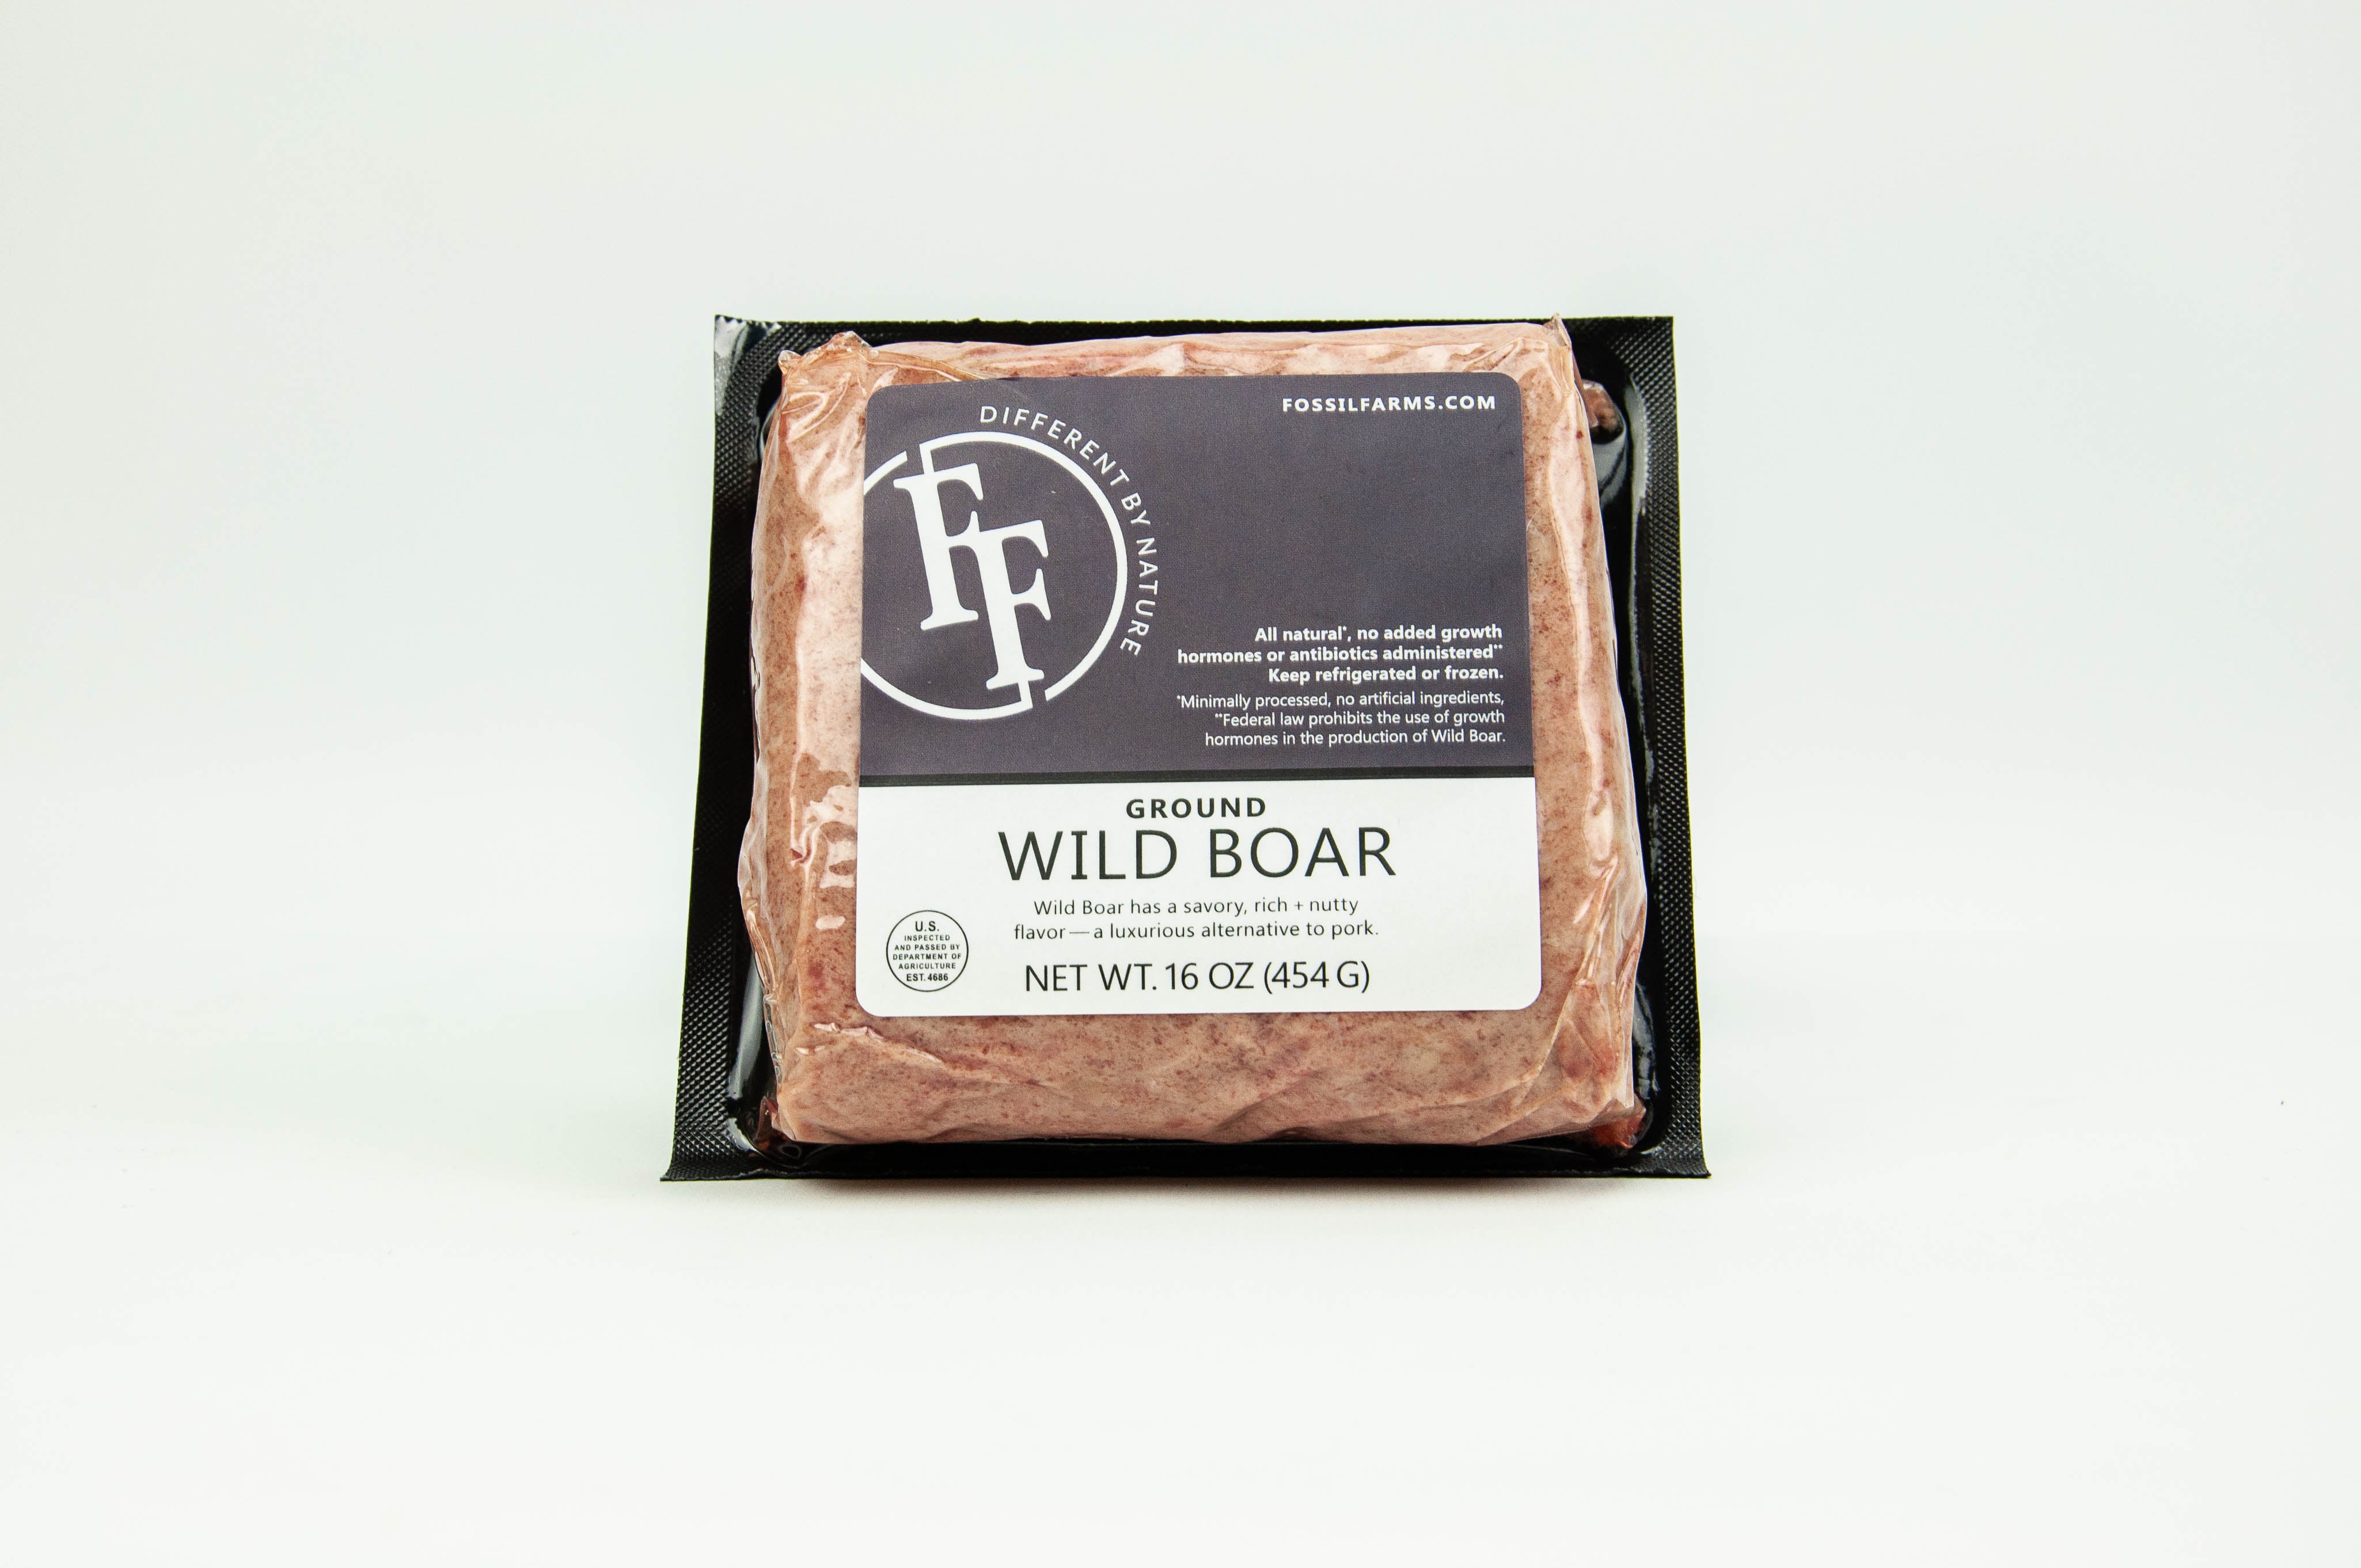 ground wild boar packaged